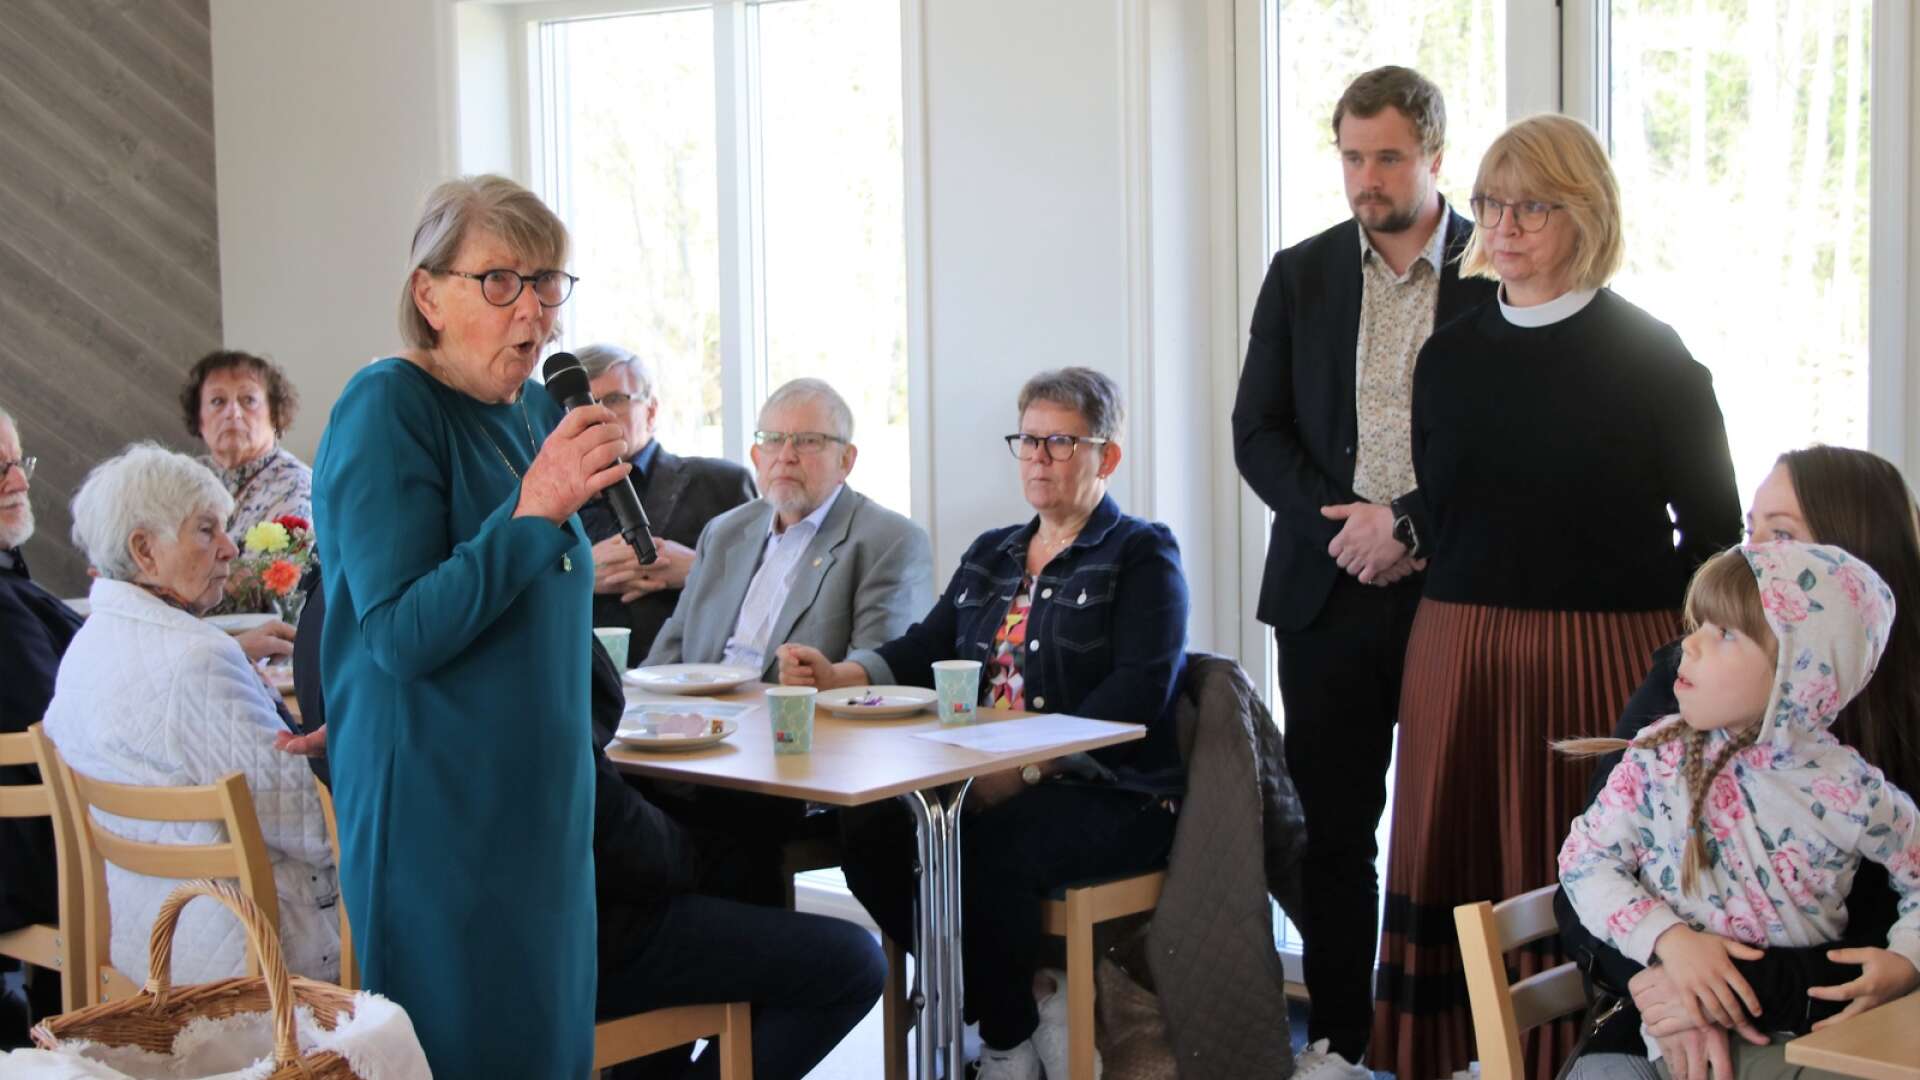 Barbro Gustafsson från verksamhetsrådet i Fröskog berättade om glädjen att kunna inviga ett nytt församlingshem. 